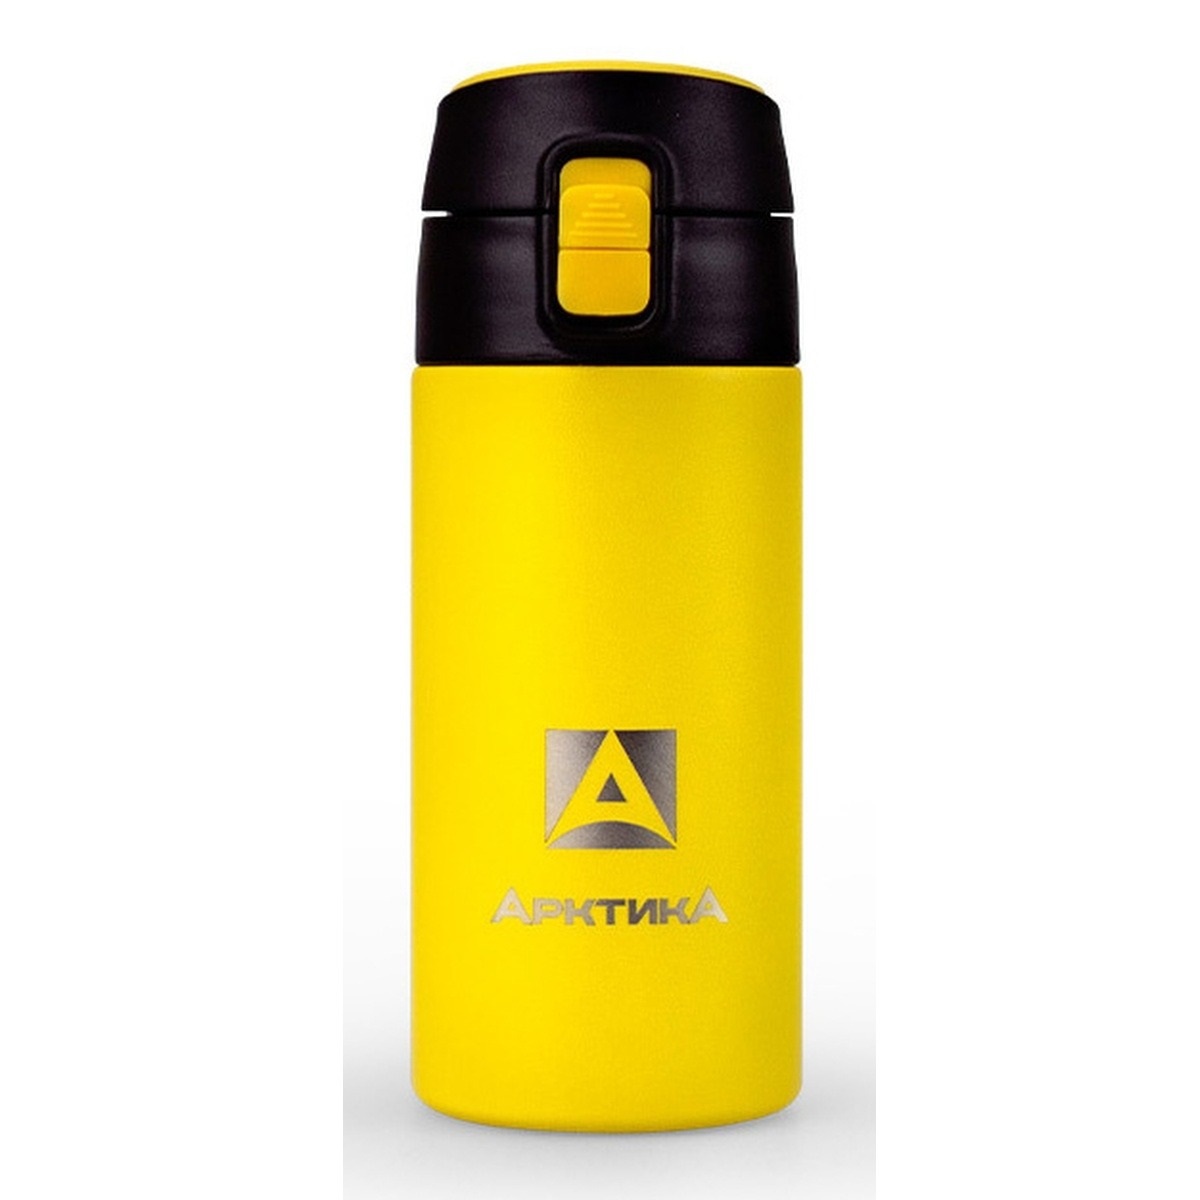 фото Ark-705-350 термос питьевой вакуумный, бытовой, тм арктика, 350 мл текстурный желтый